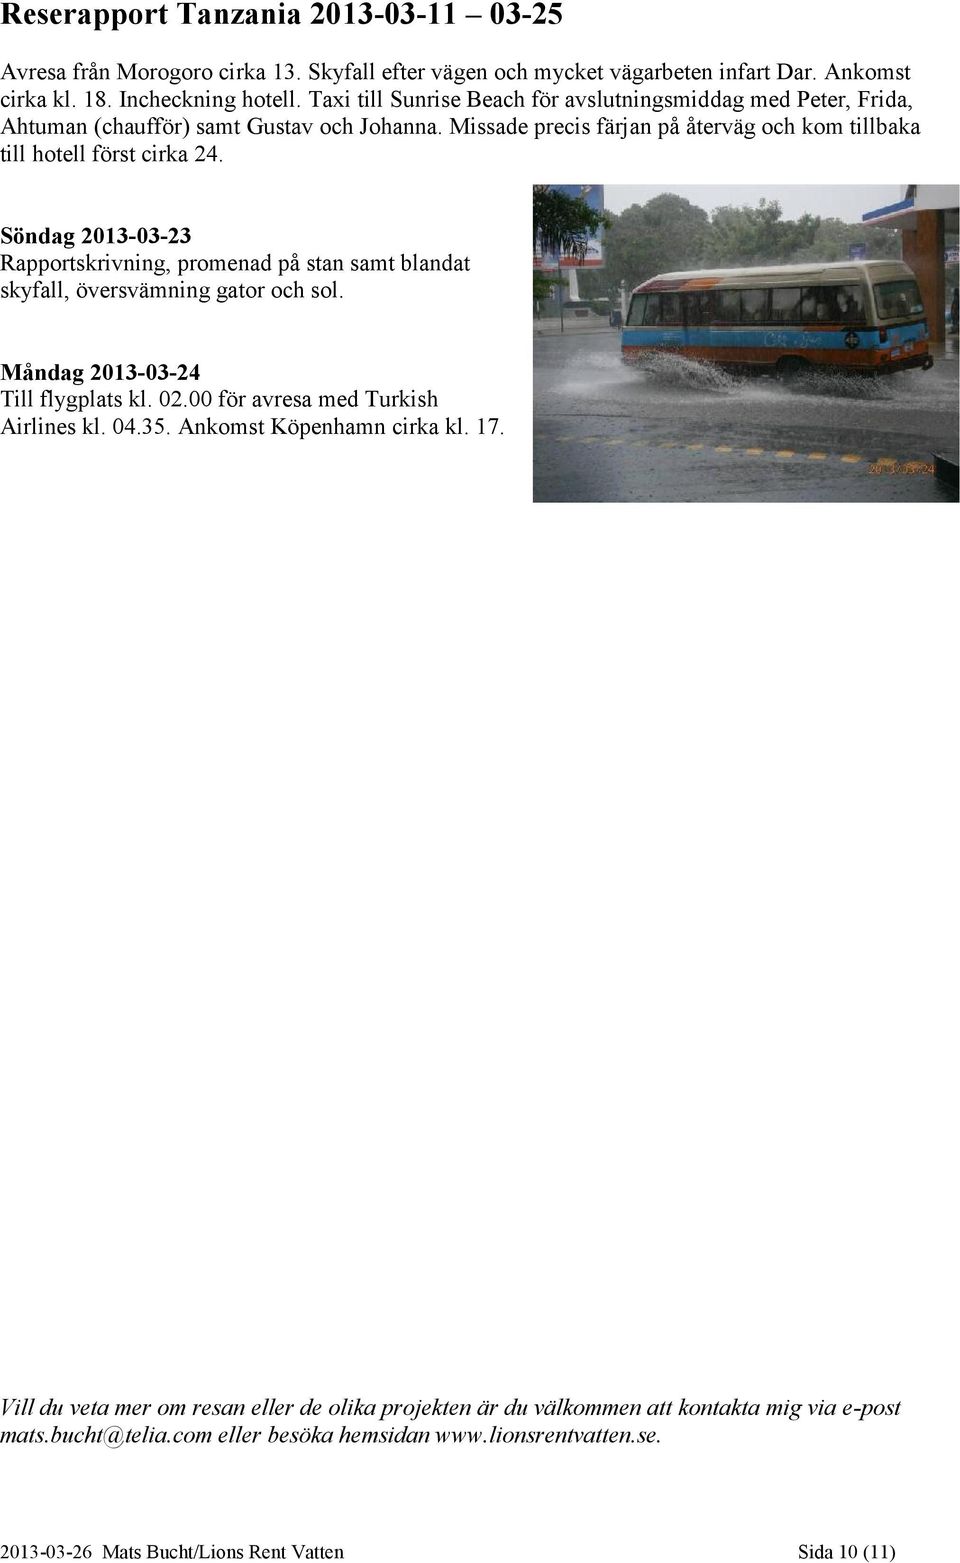 Söndag 2013-03-23 Rapportskrivning, promenad på stan samt blandat skyfall, översvämning gator och sol. Måndag 2013-03-24 Till flygplats kl. 02.00 för avresa med Turkish Airlines kl. 04.